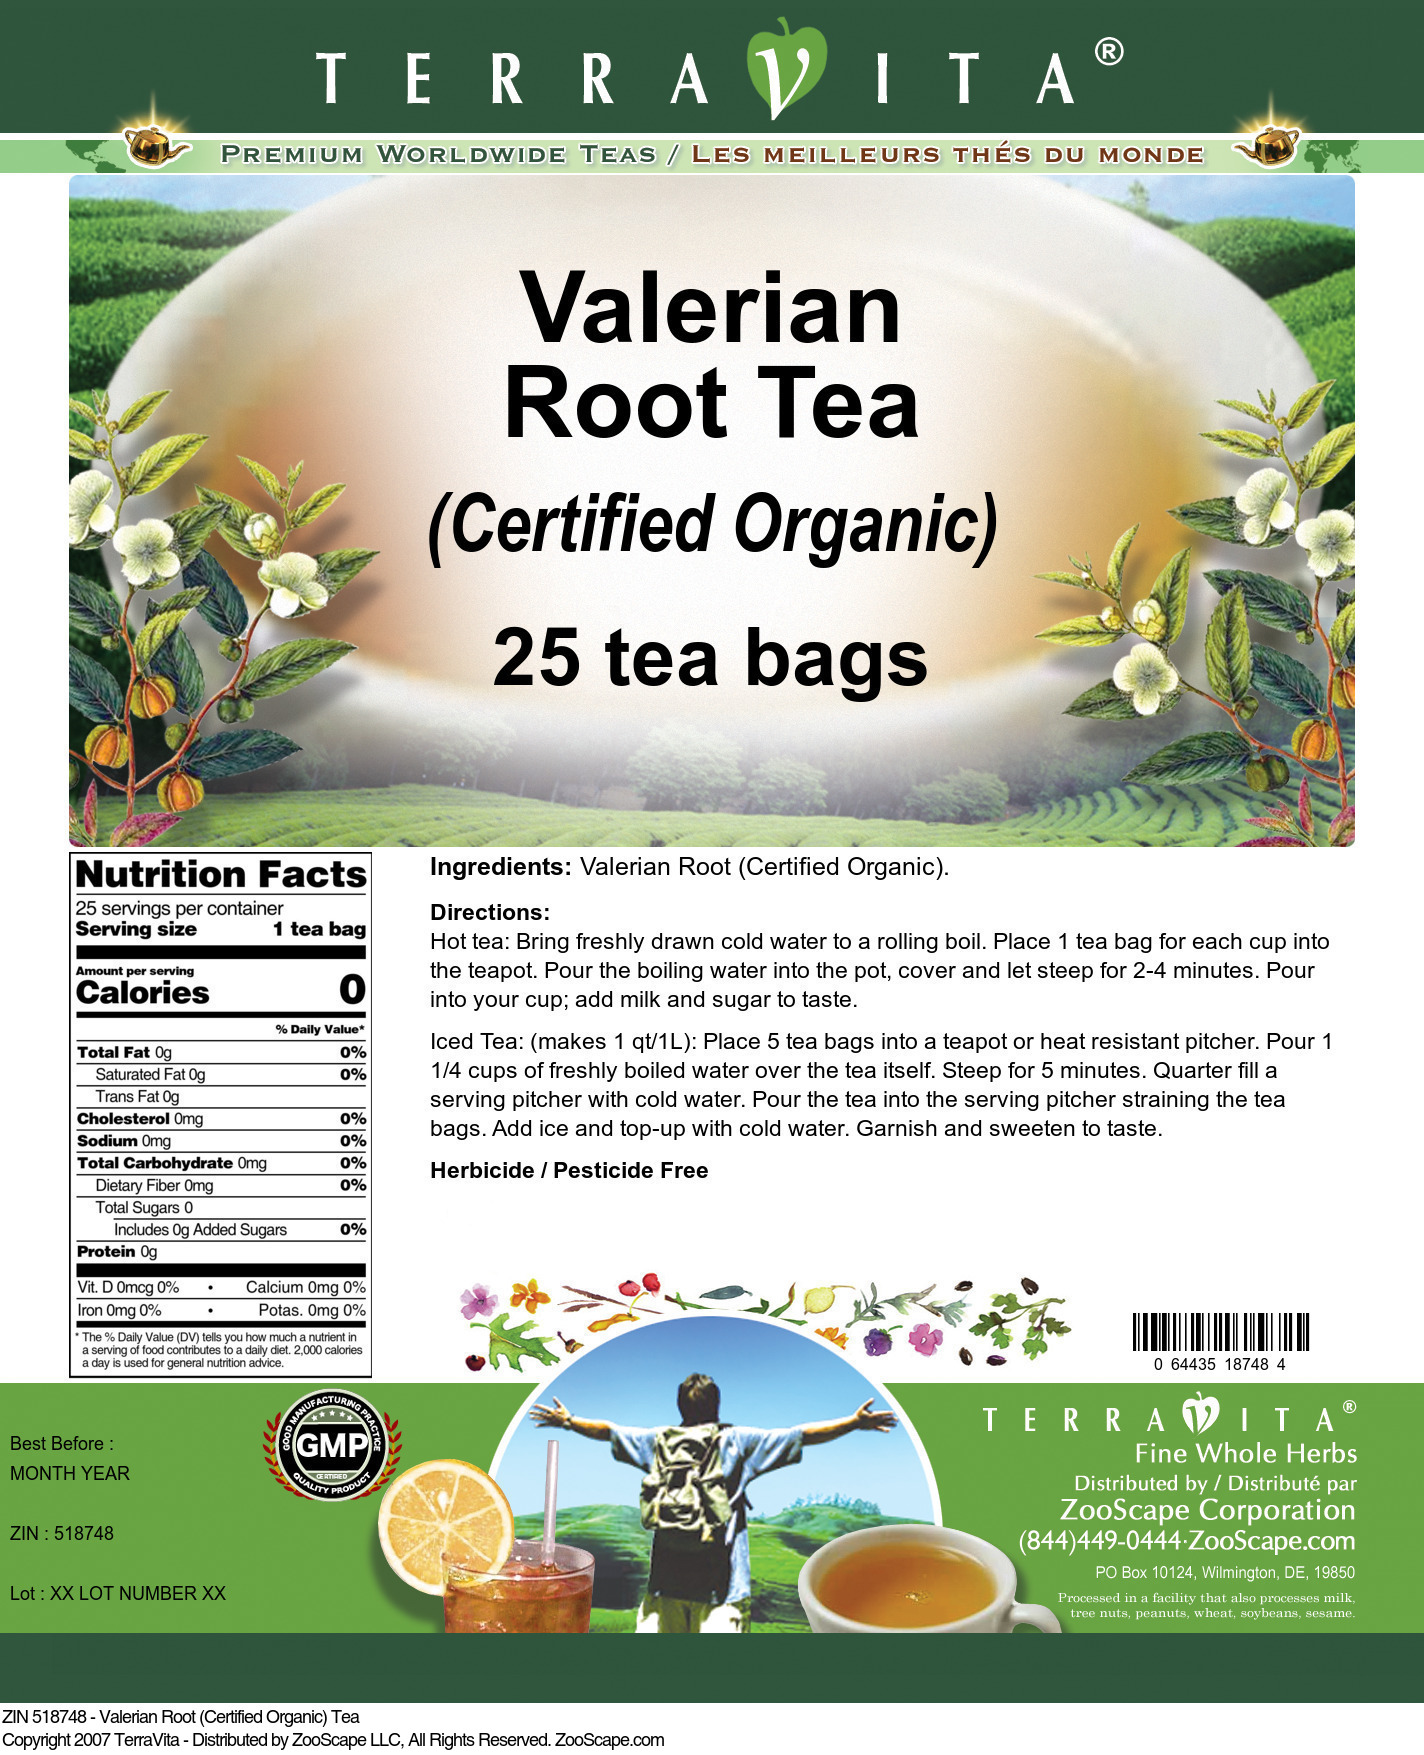 Valerian Root (Certified Organic) Tea - Label